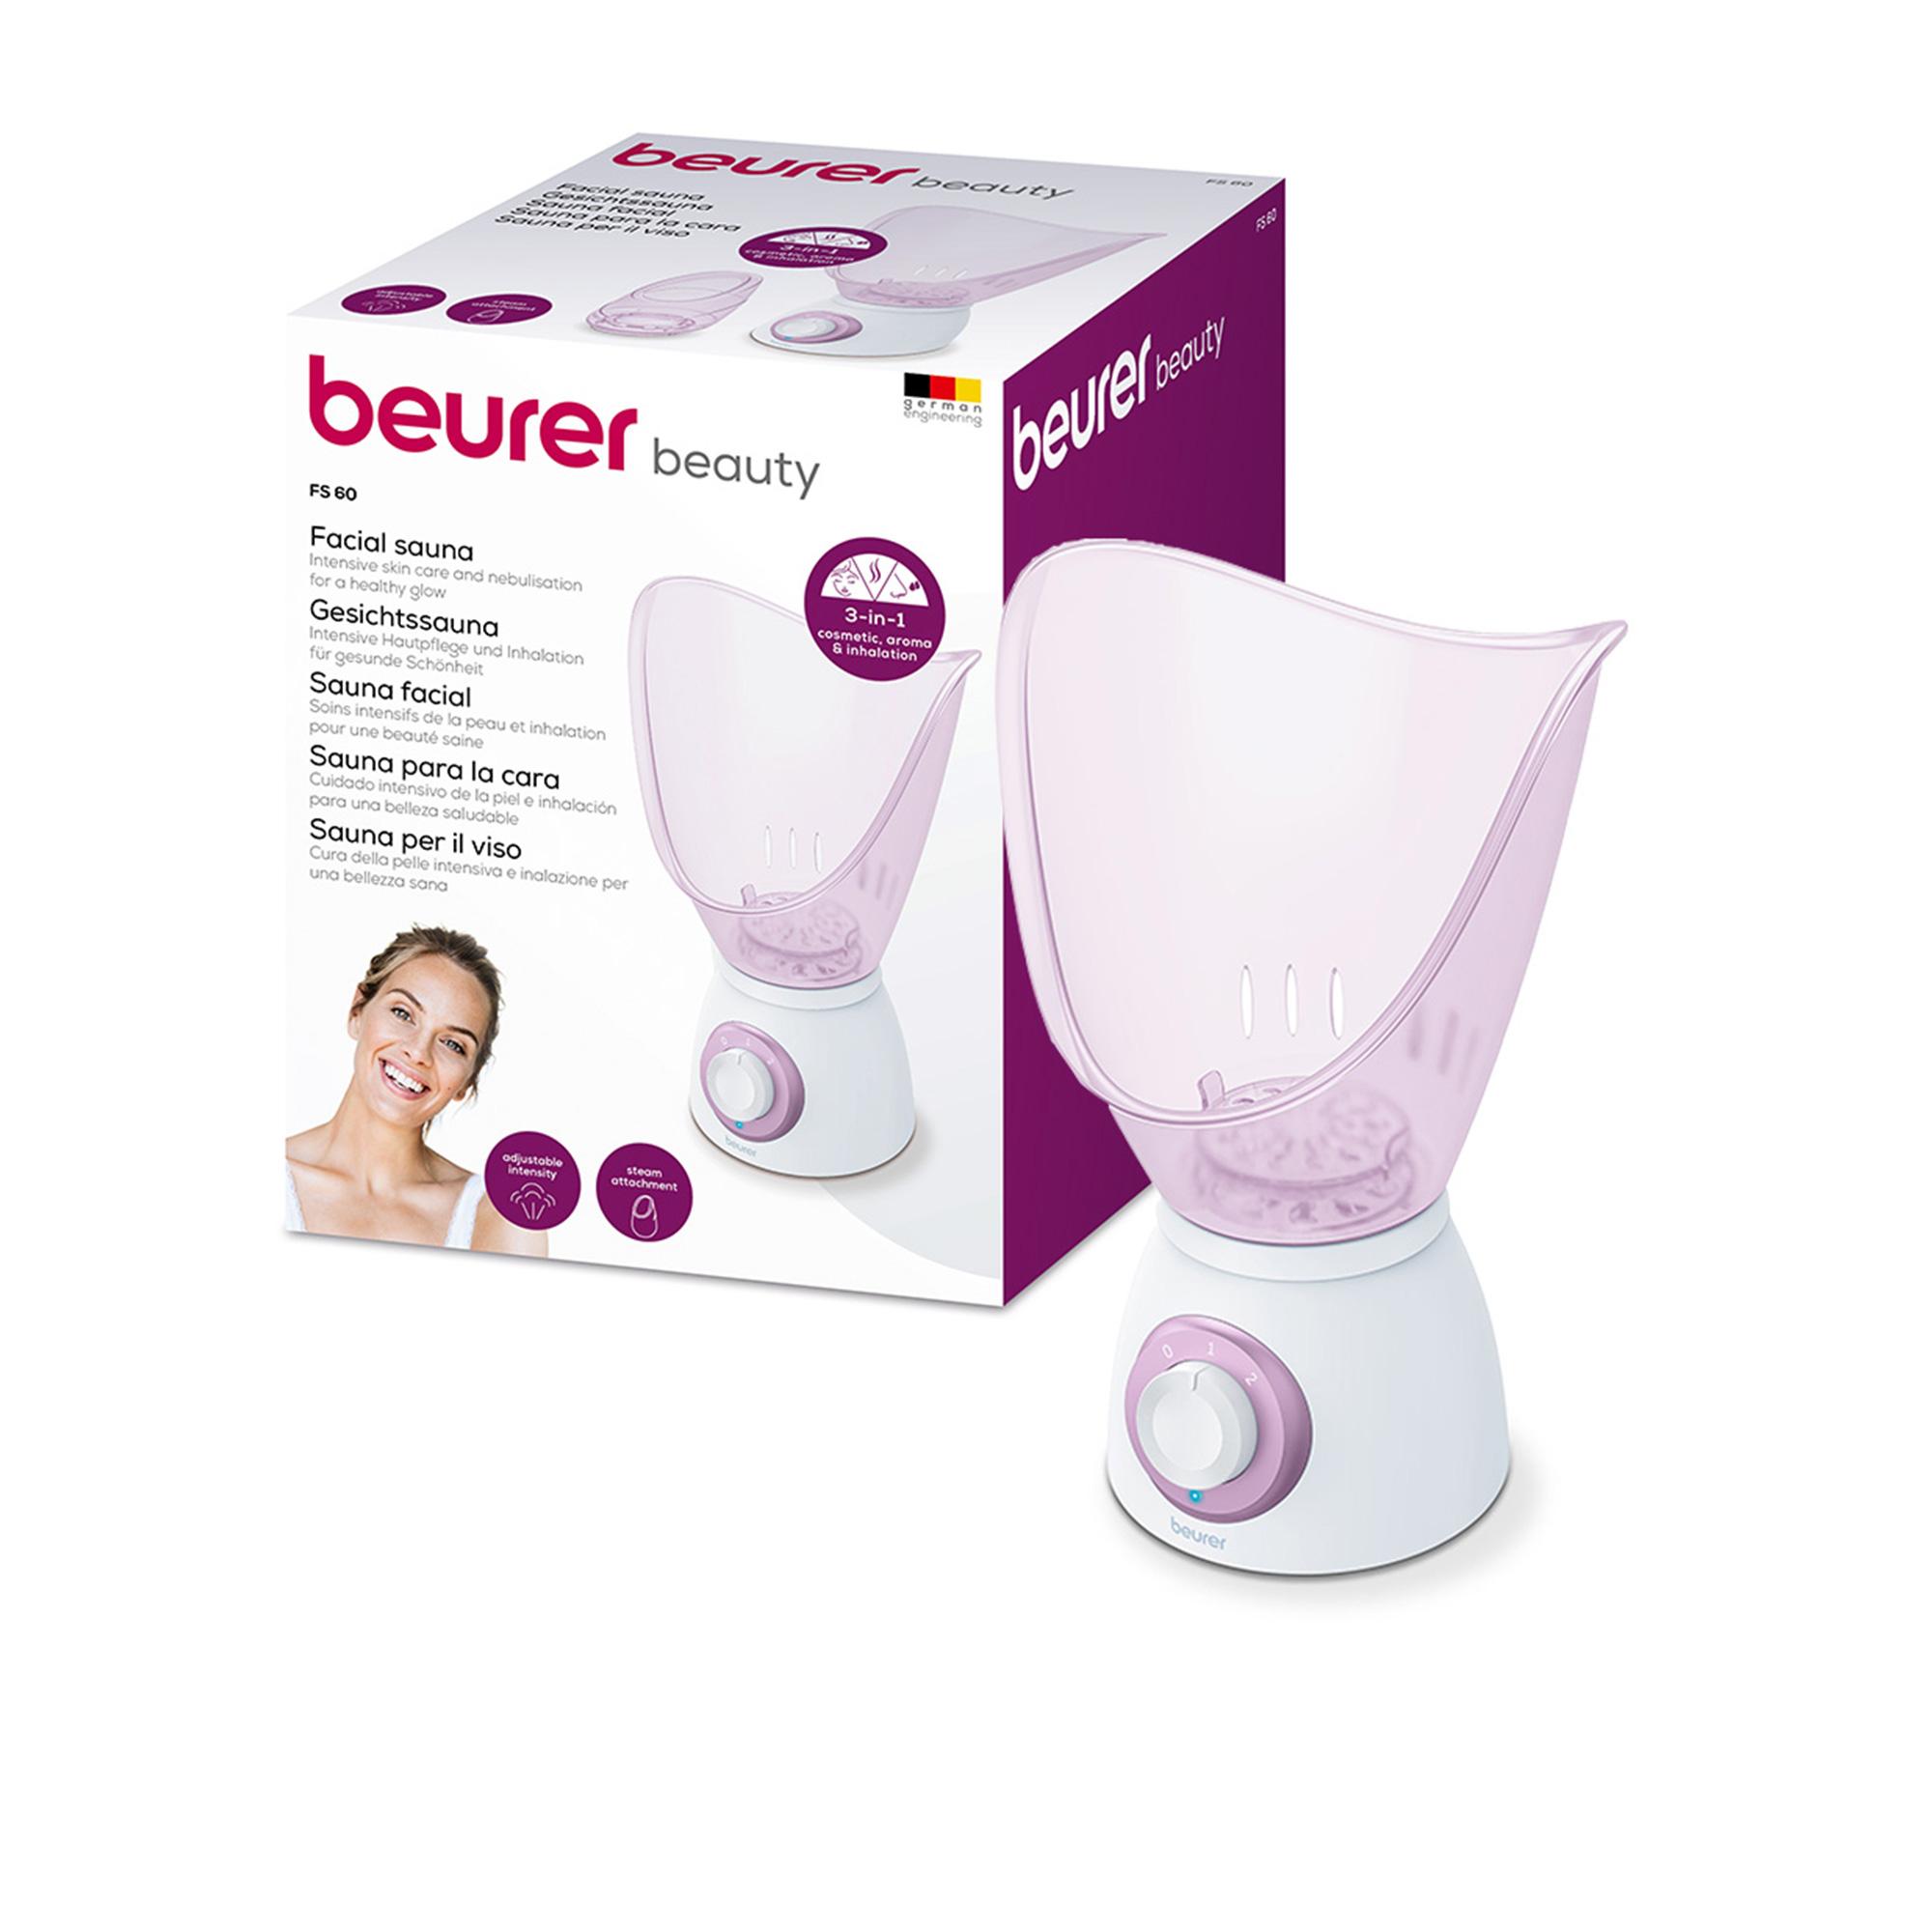 Beurer Facial Sauna and Intensive Inhaler Image 6